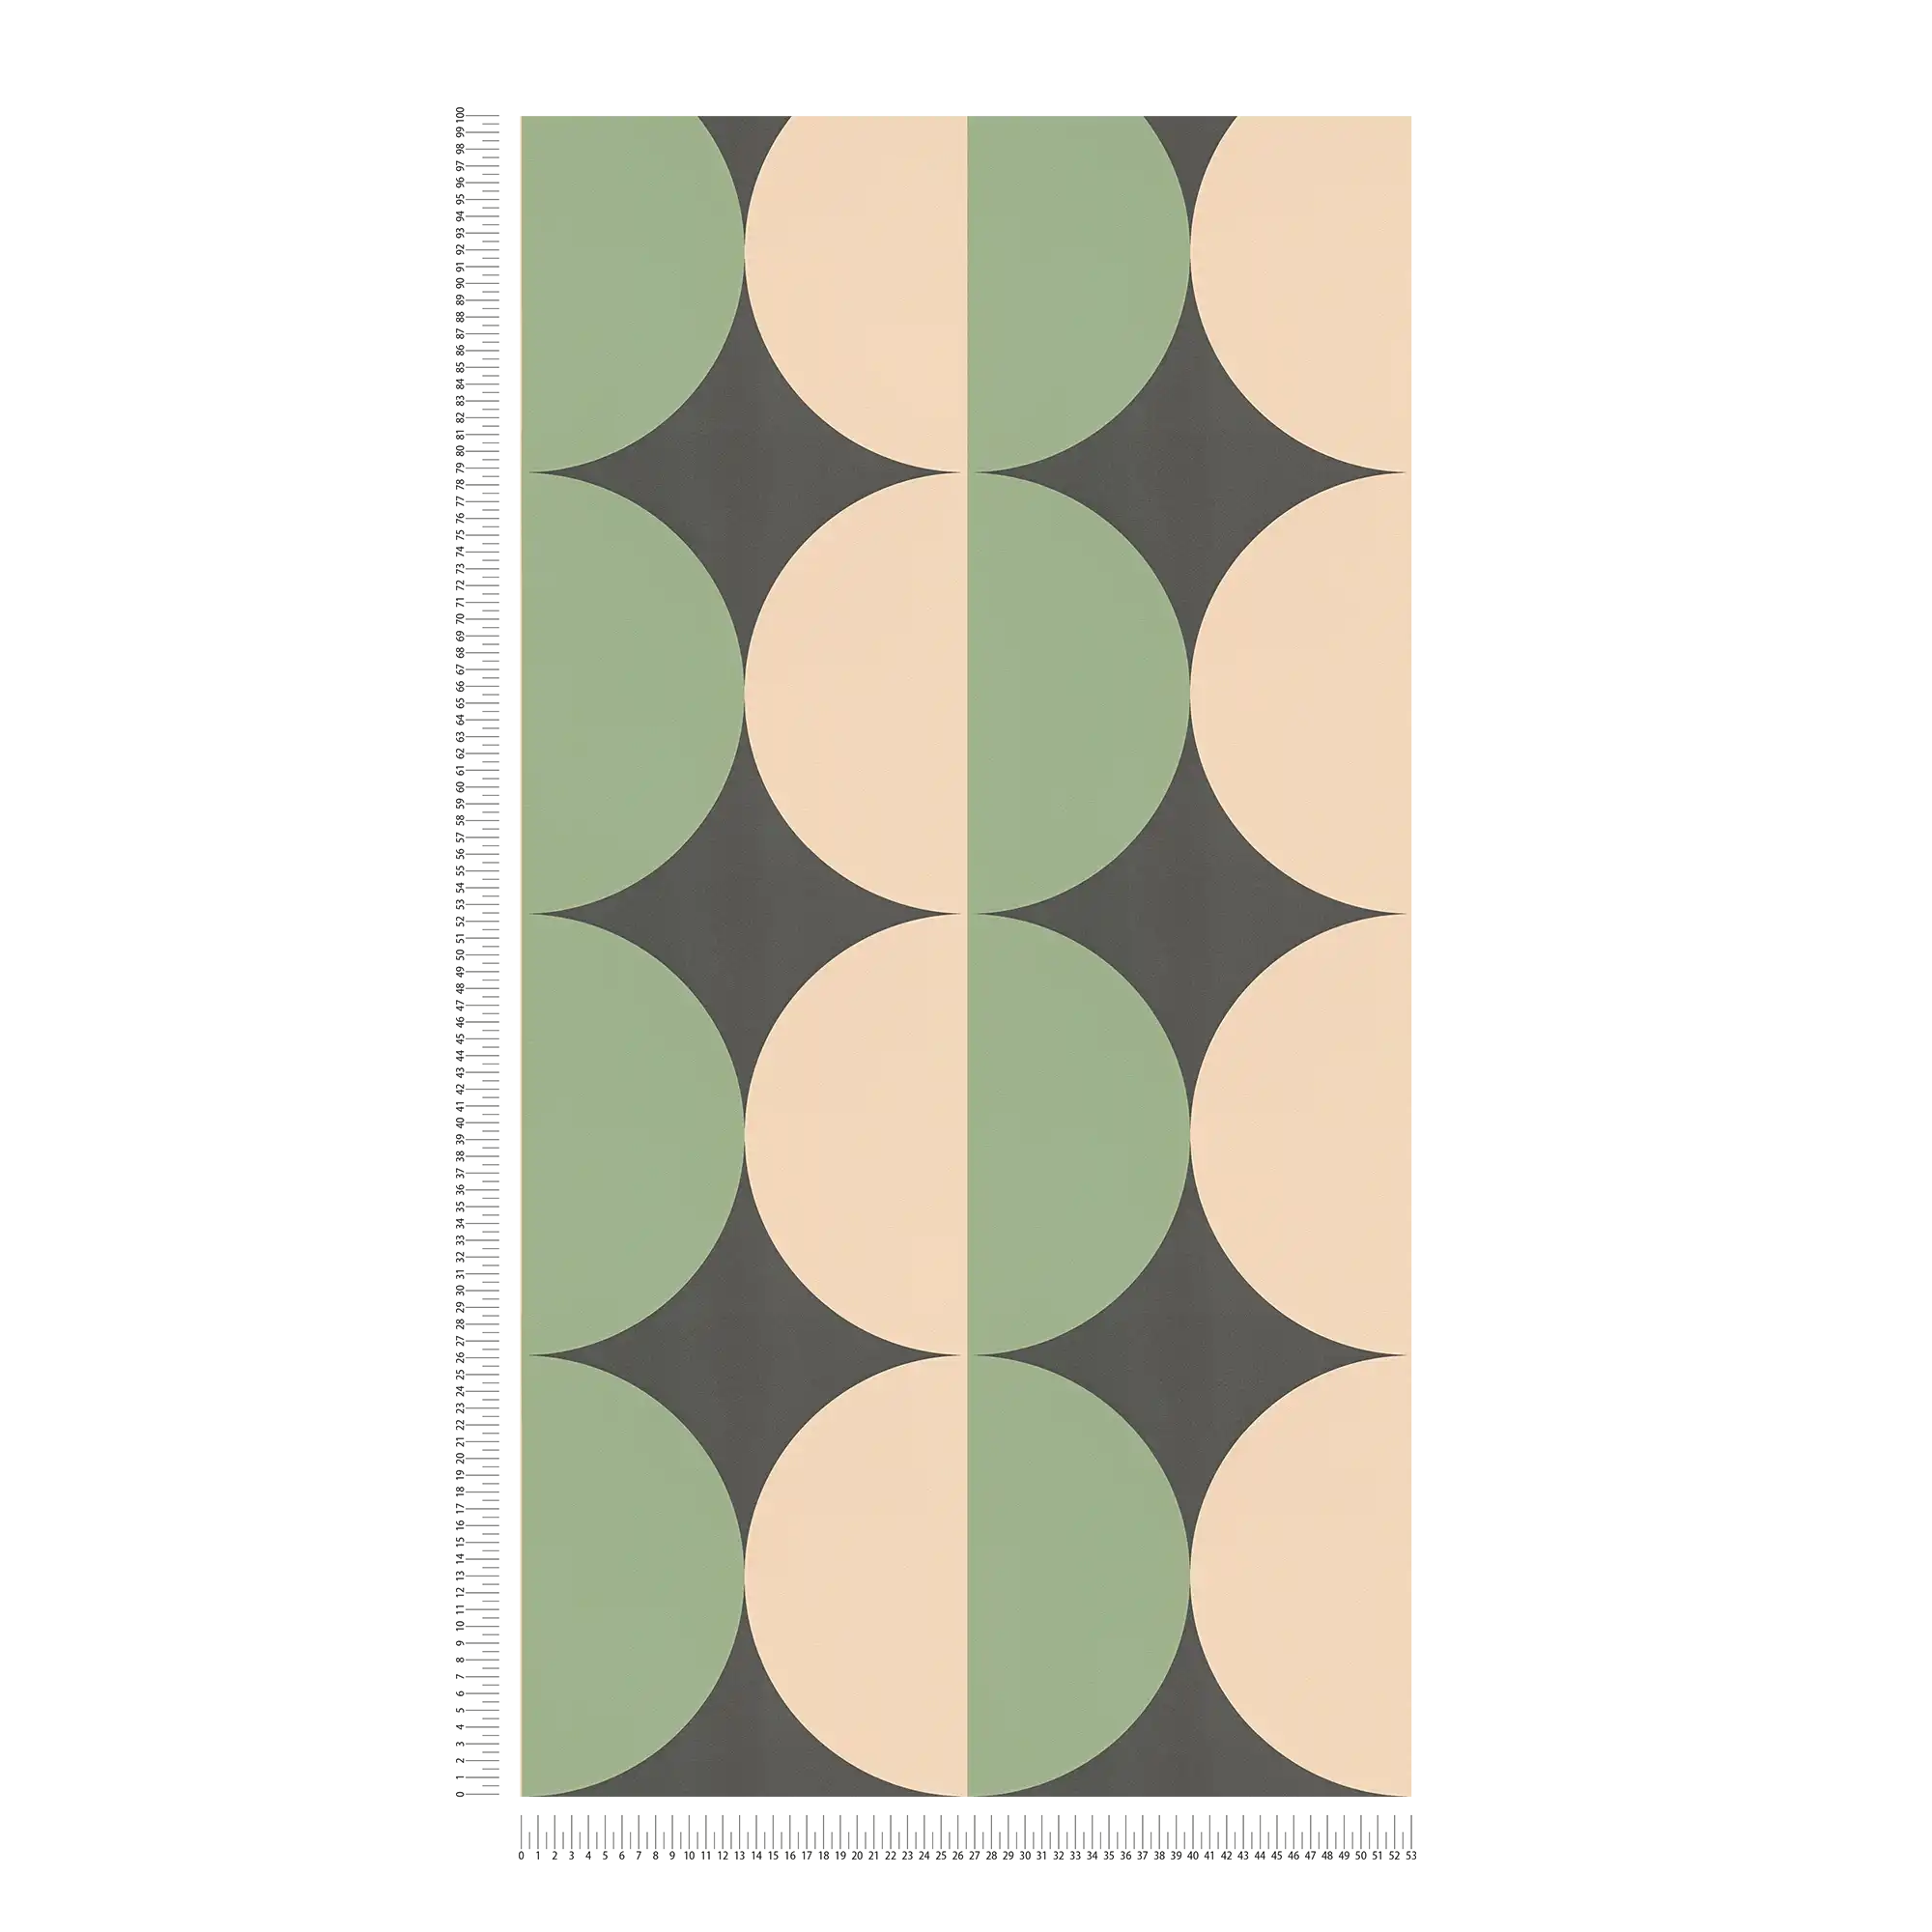             Papel pintado no tejido con motivos gráficos circulares retro - verde, beige, negro
        